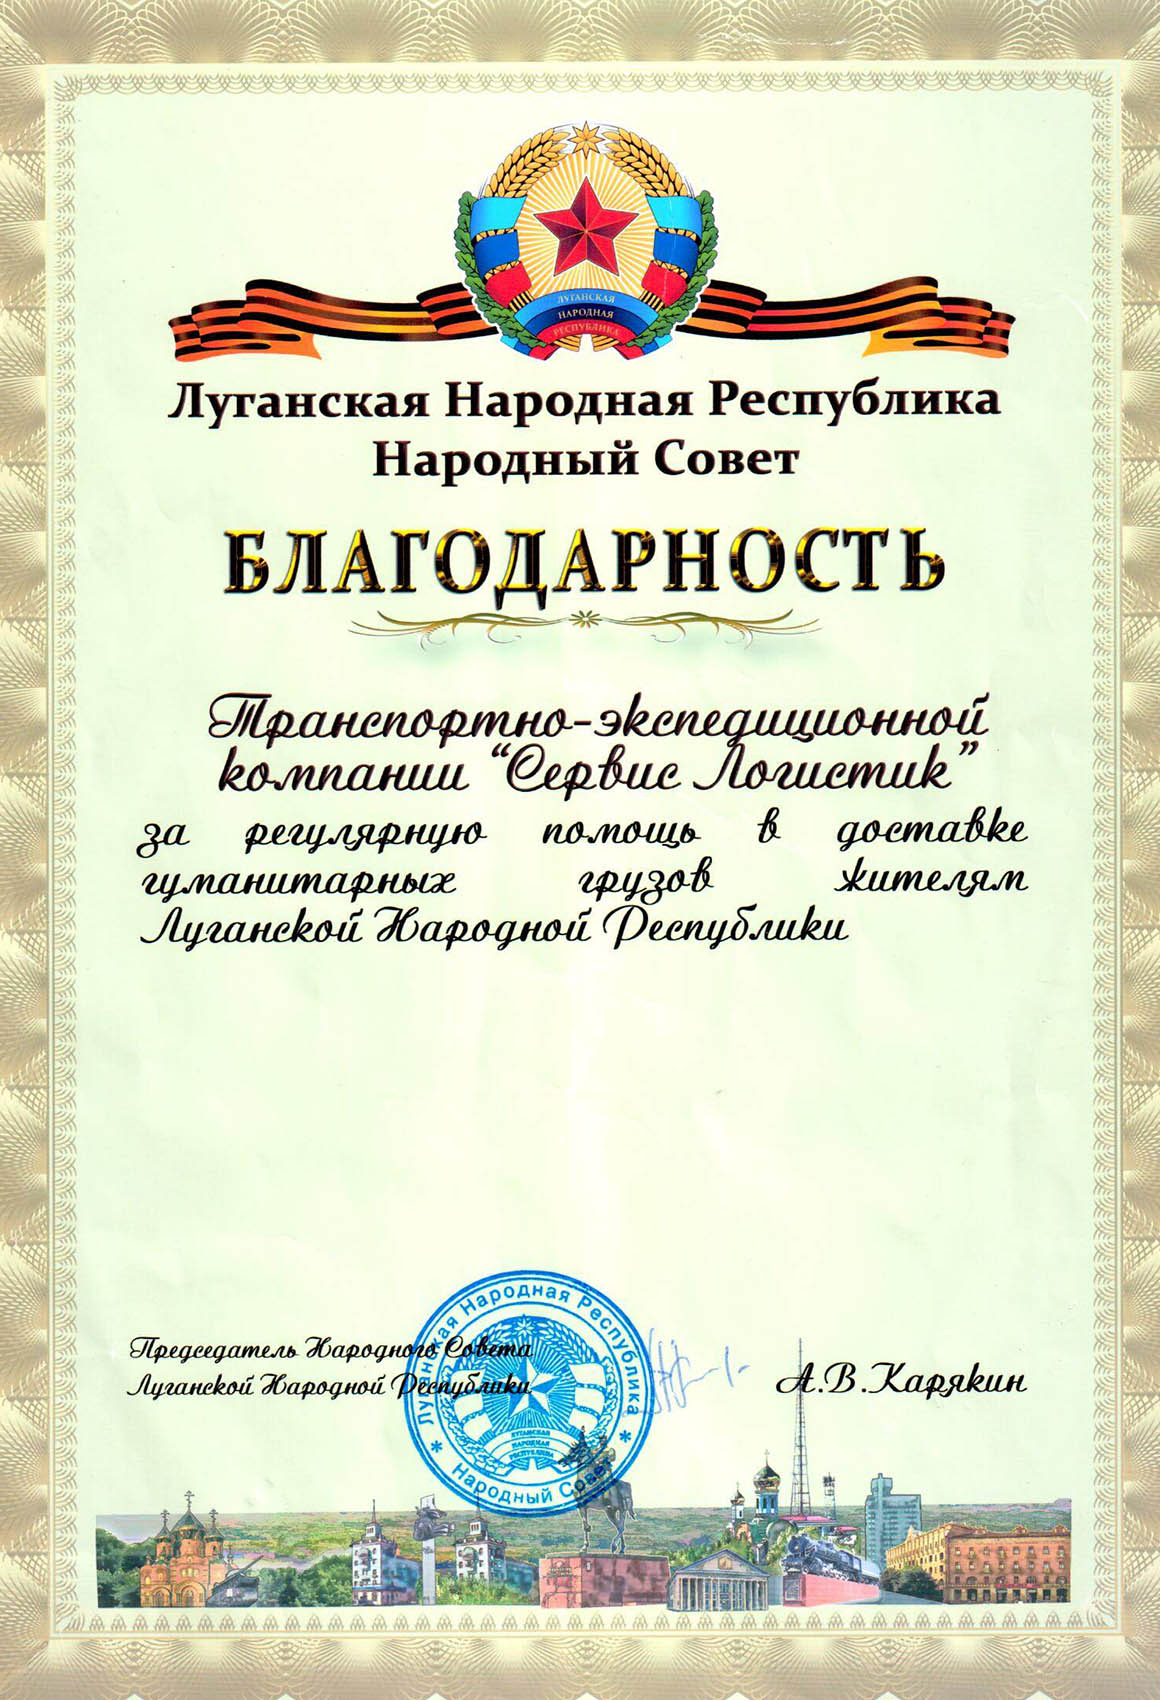 Благодарственное письмо от Луганской Народной Республики